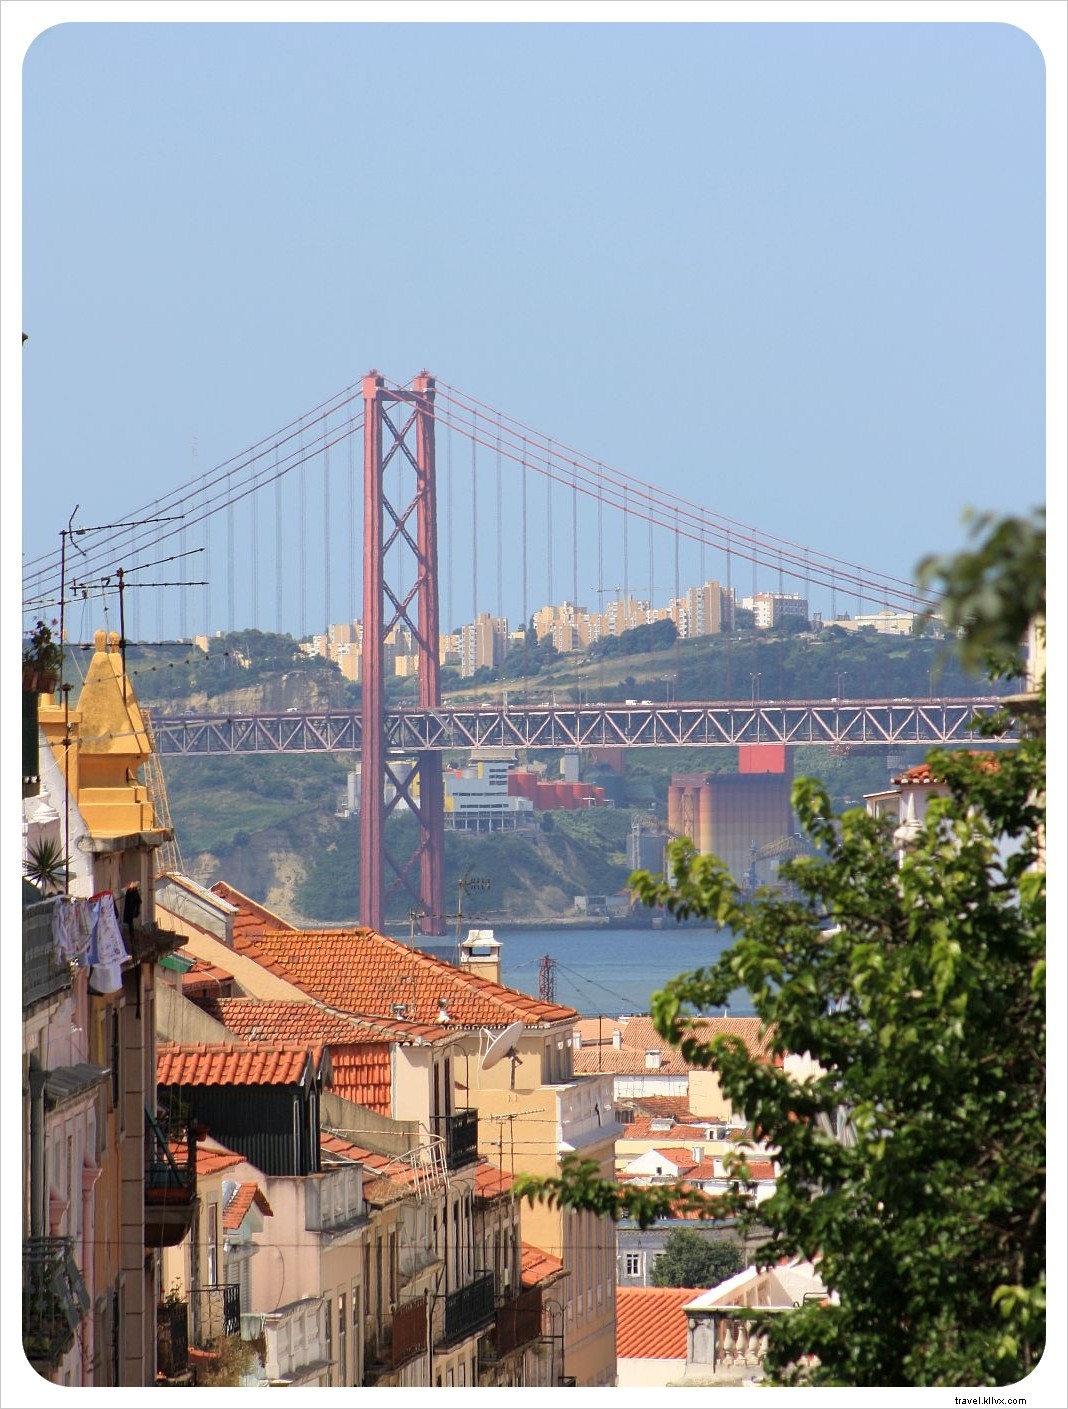 Lisboa sobre ruedas:¡sal y monta!